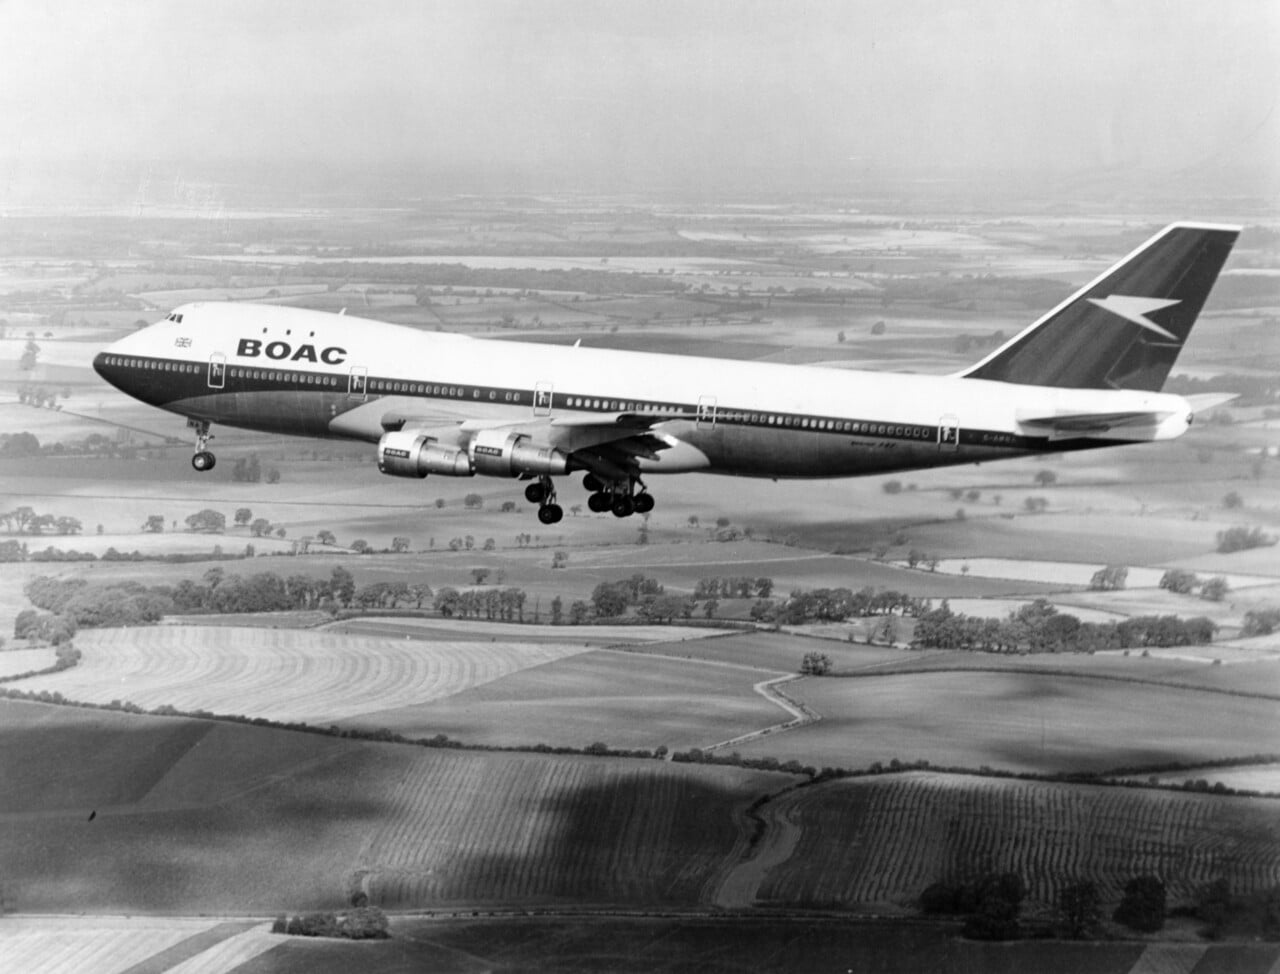 British Airways/BOAC Boeing 747